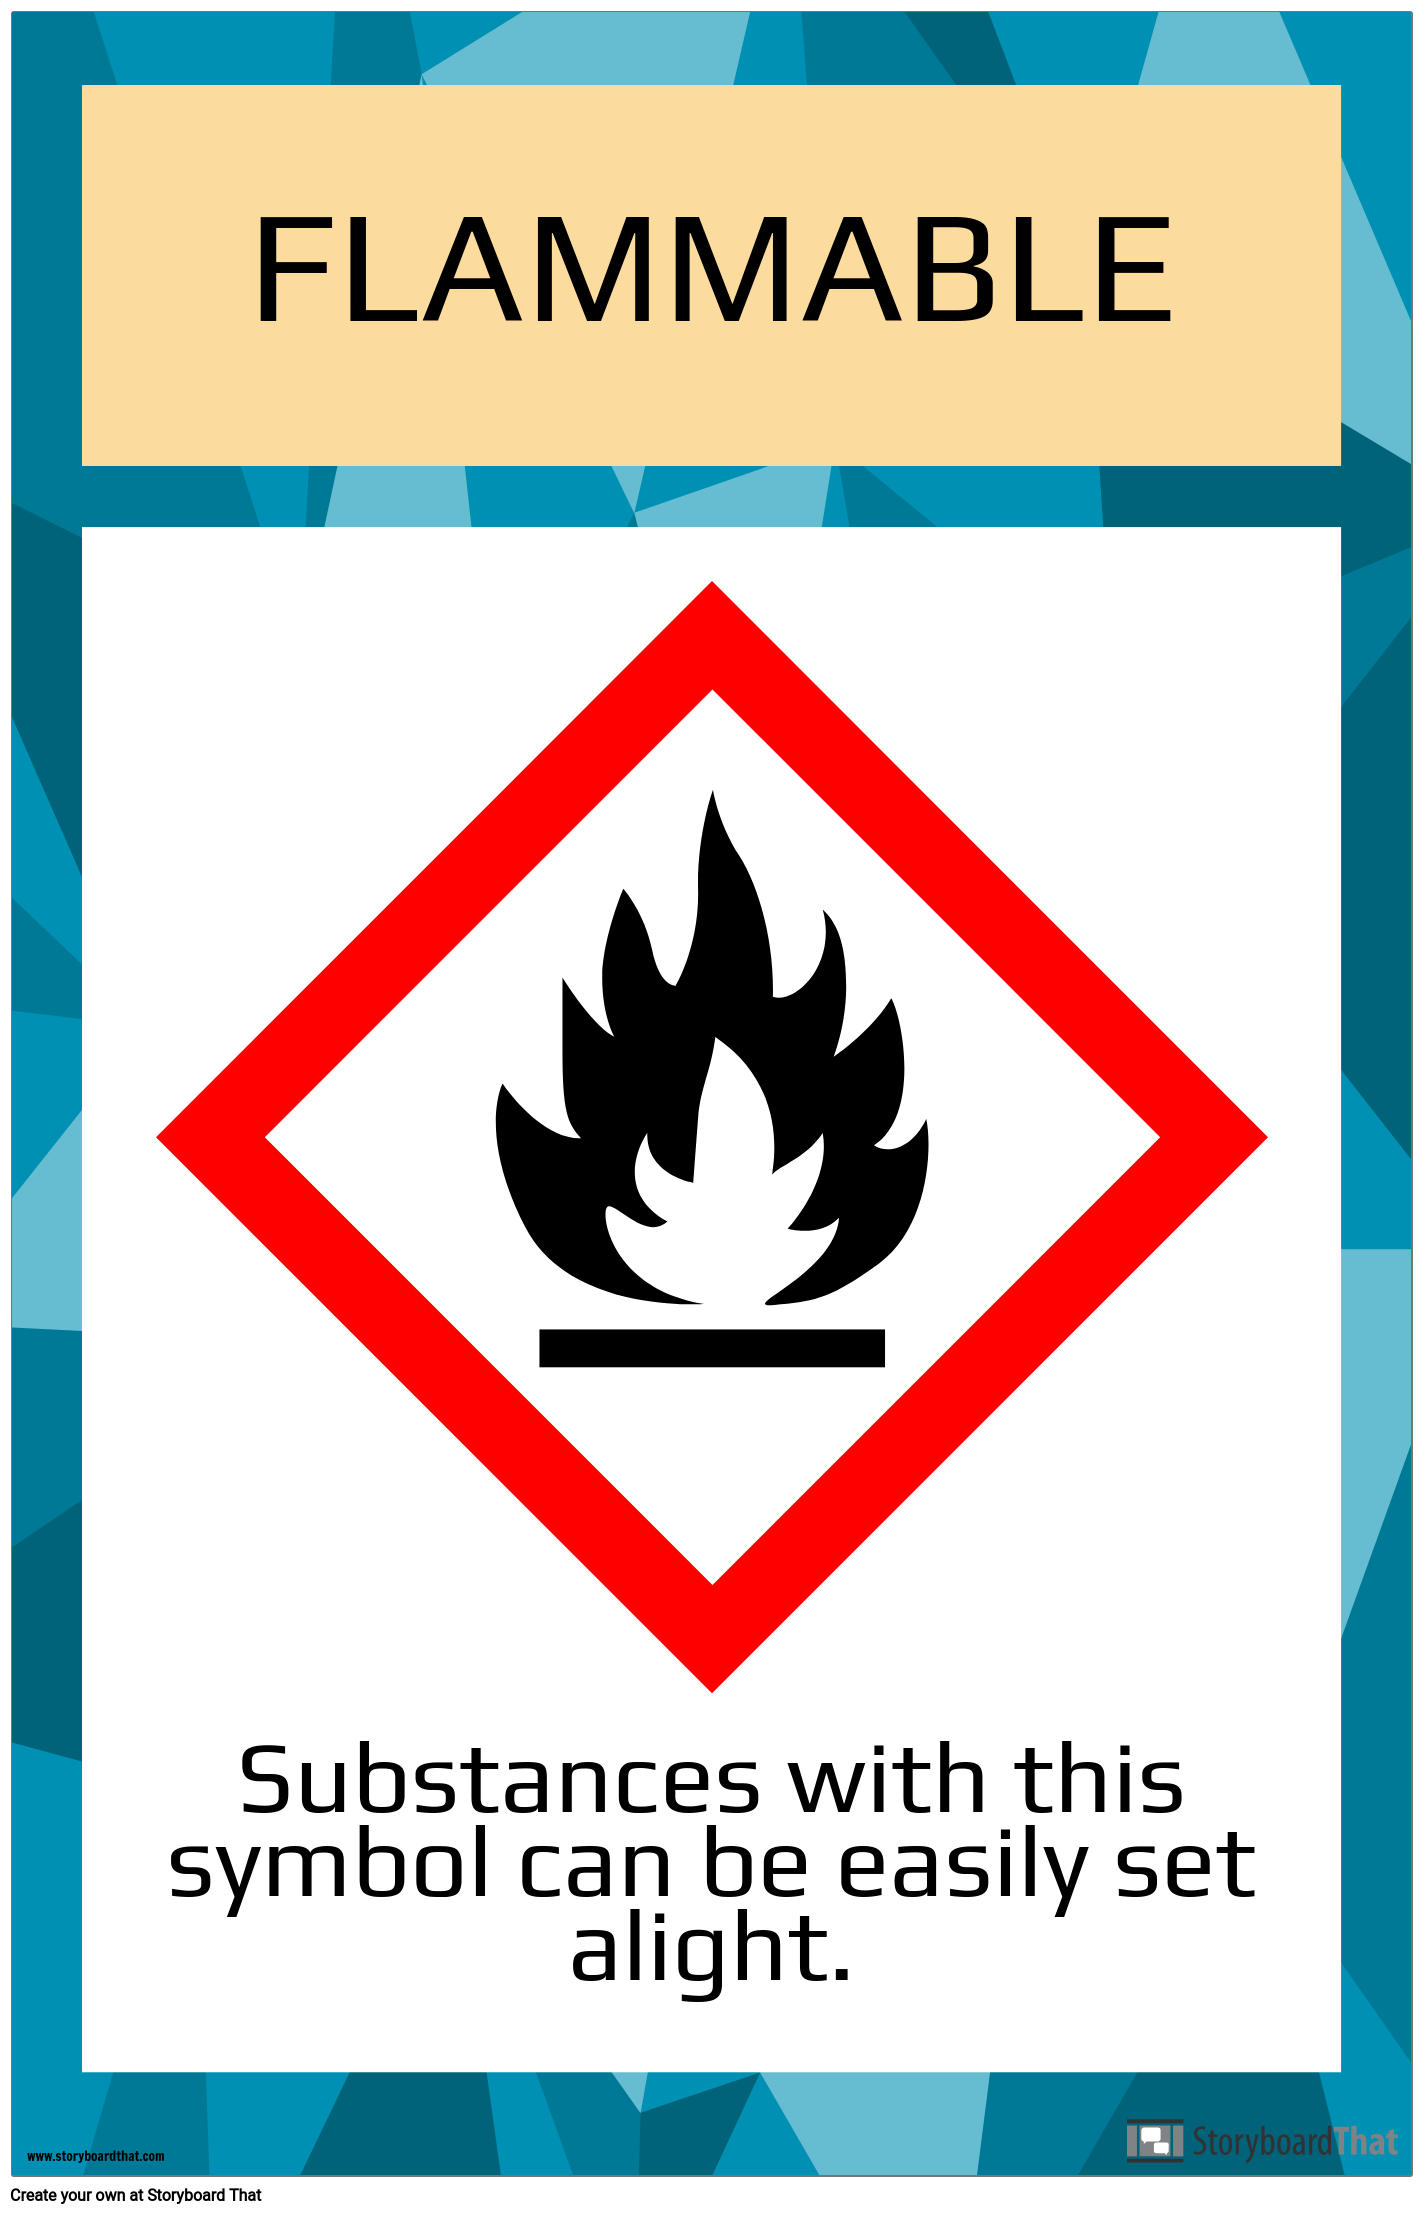 قواعد السلامة في الملصقات والملصقات كن آمن ا في مختبر العلوم